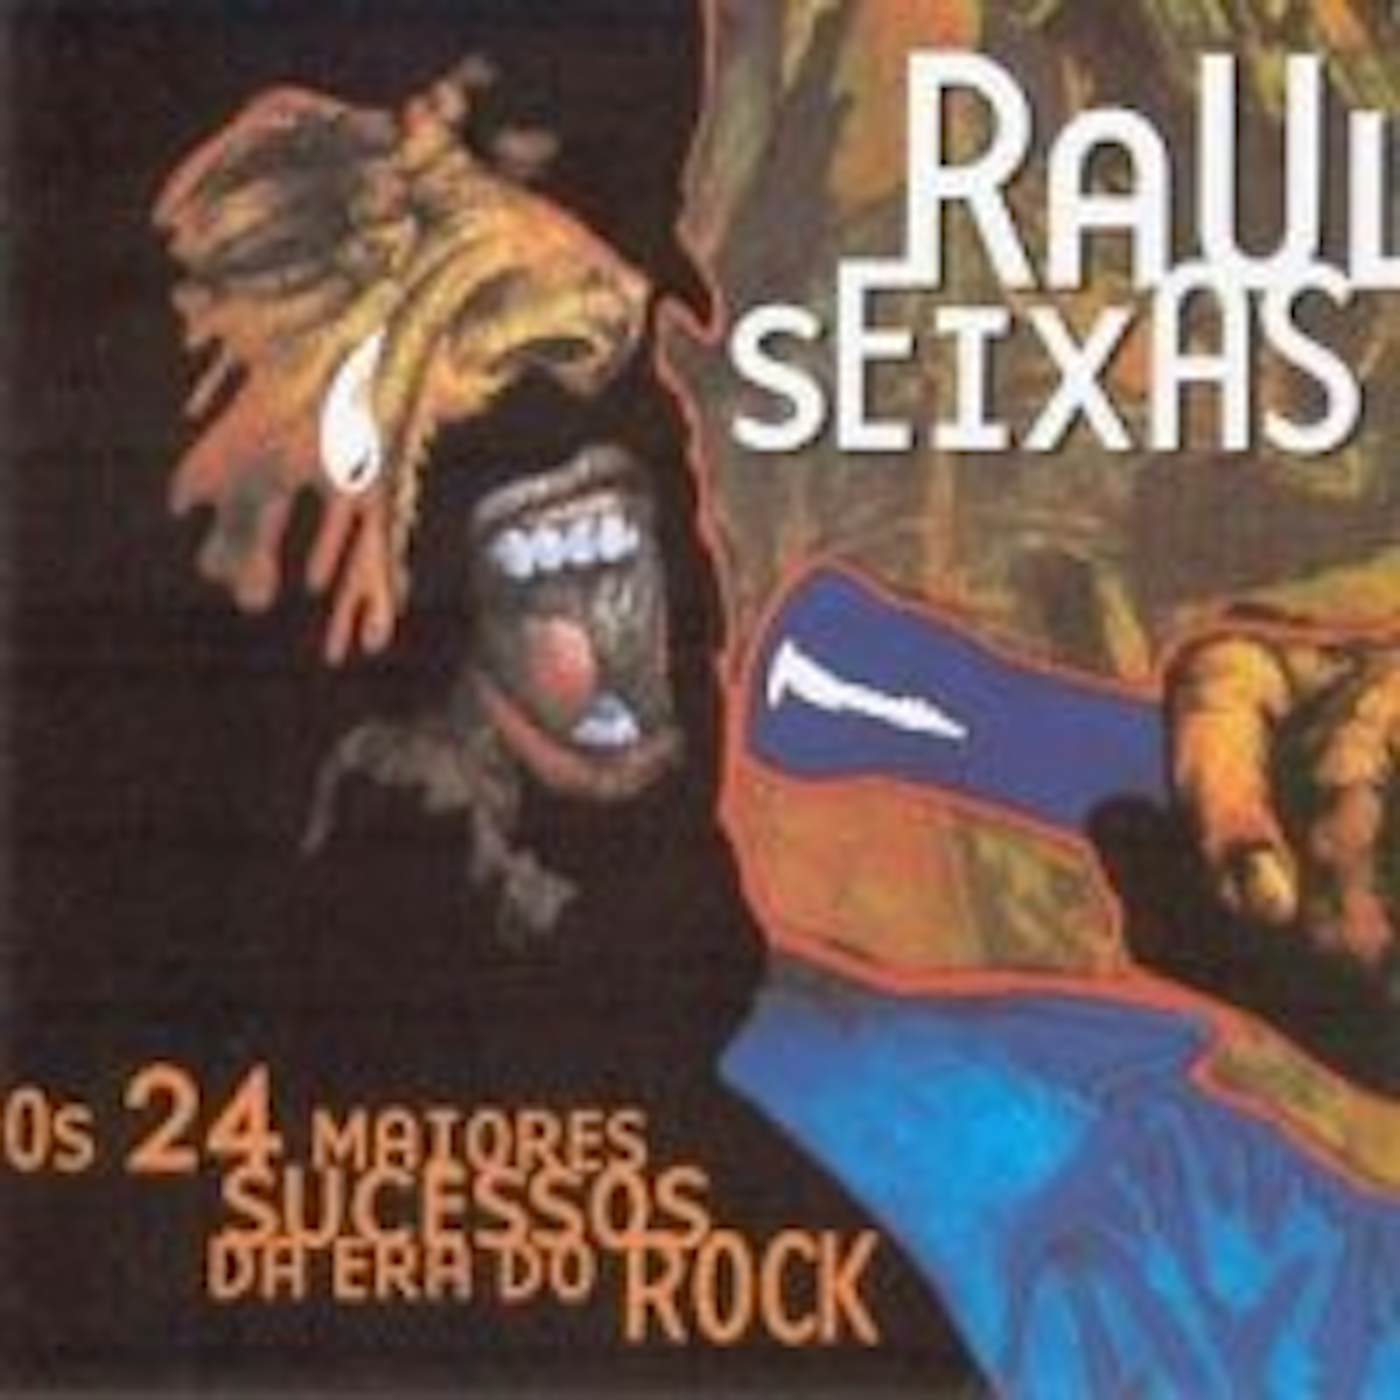 Raul Seixas 24 MAIORES SUCESSOS DA ERA DO ROCK CD